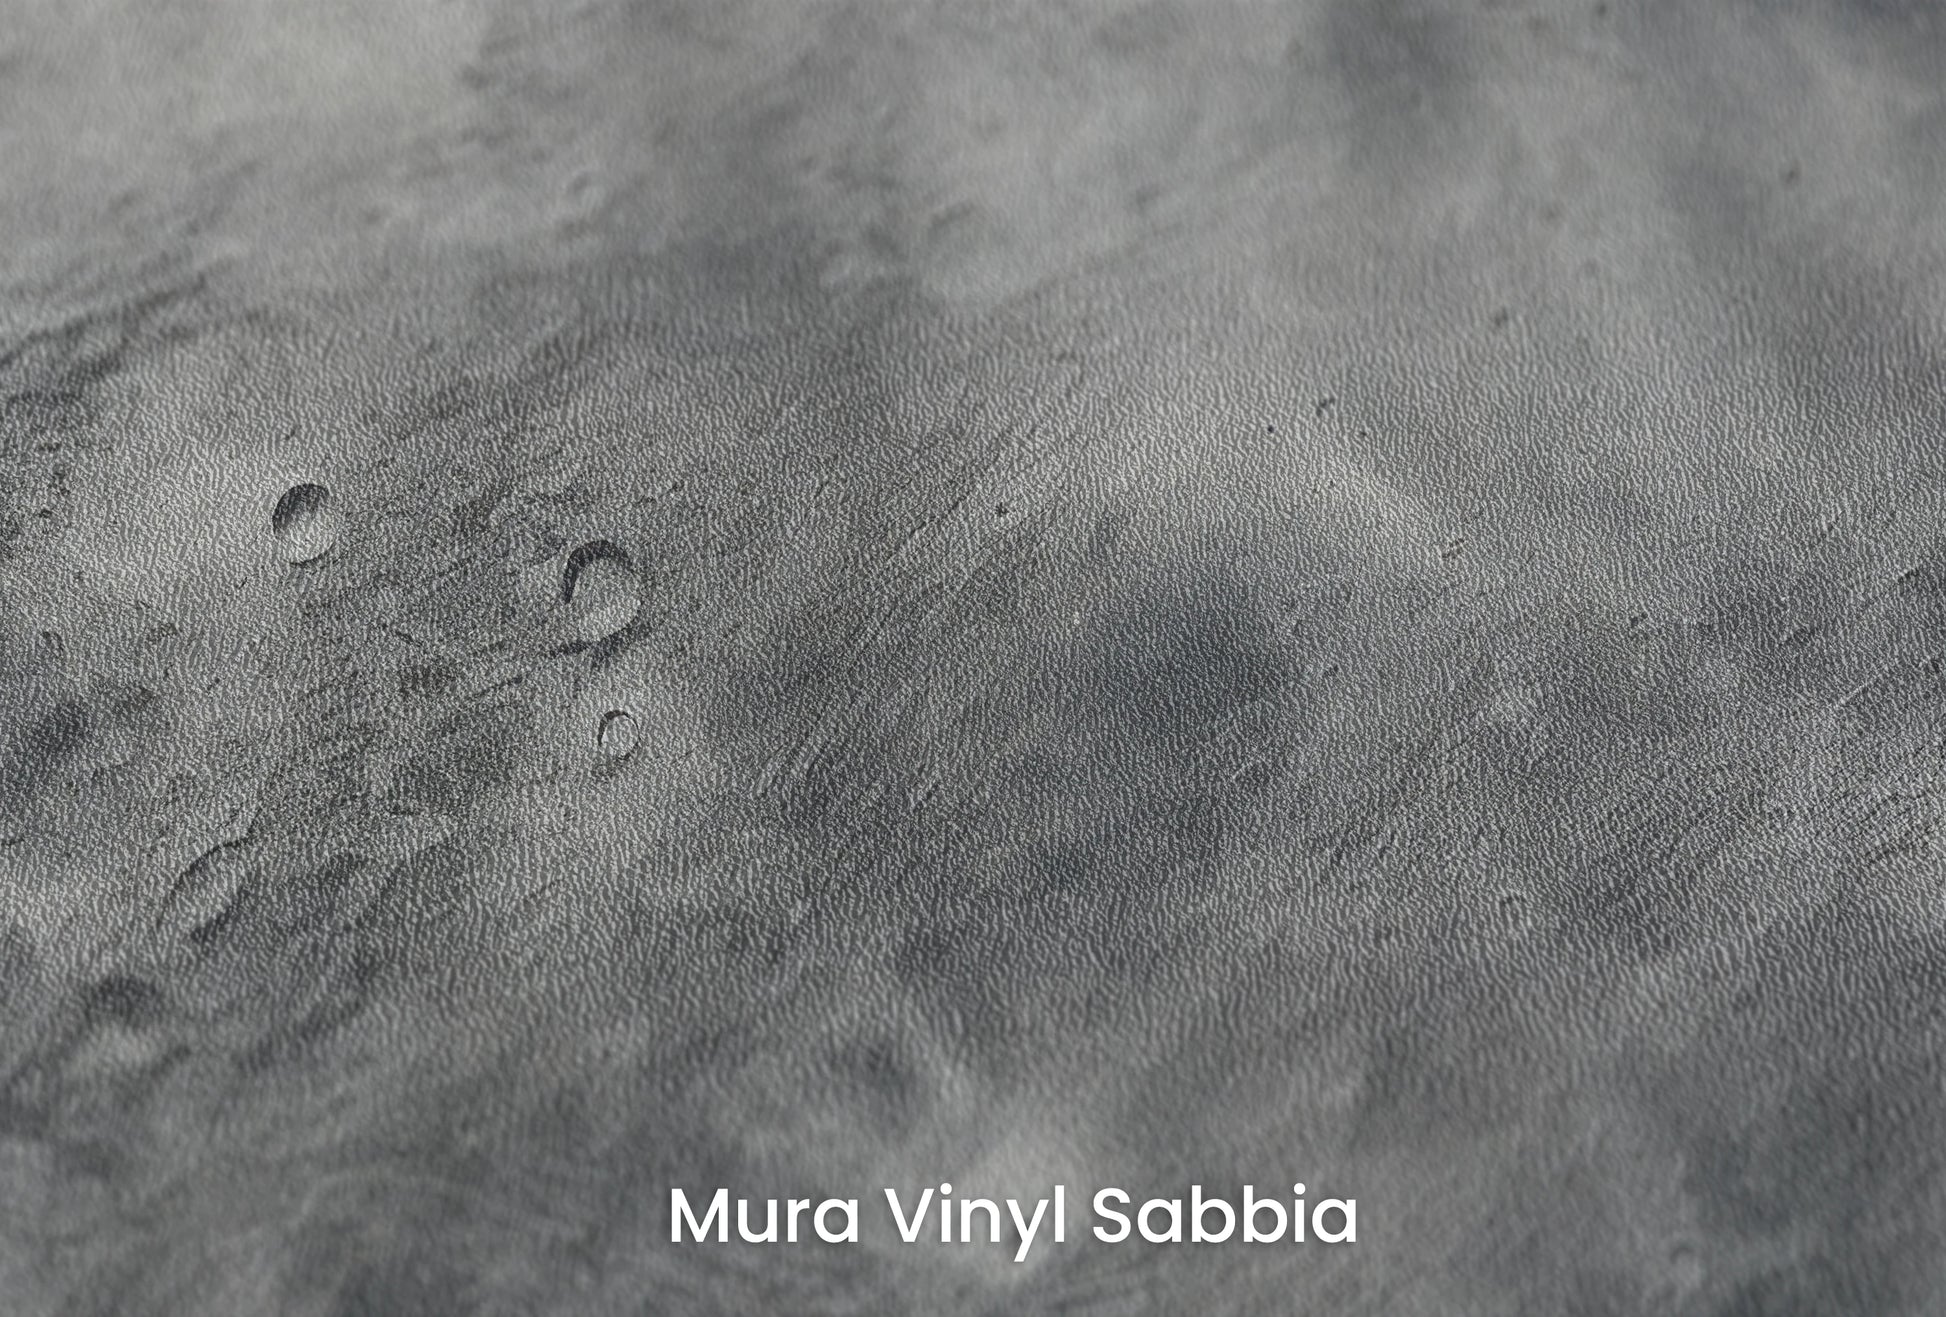 Zbliżenie na artystyczną fototapetę o nazwie Mercury's Crust na podłożu Mura Vinyl Sabbia struktura grubego ziarna piasku.